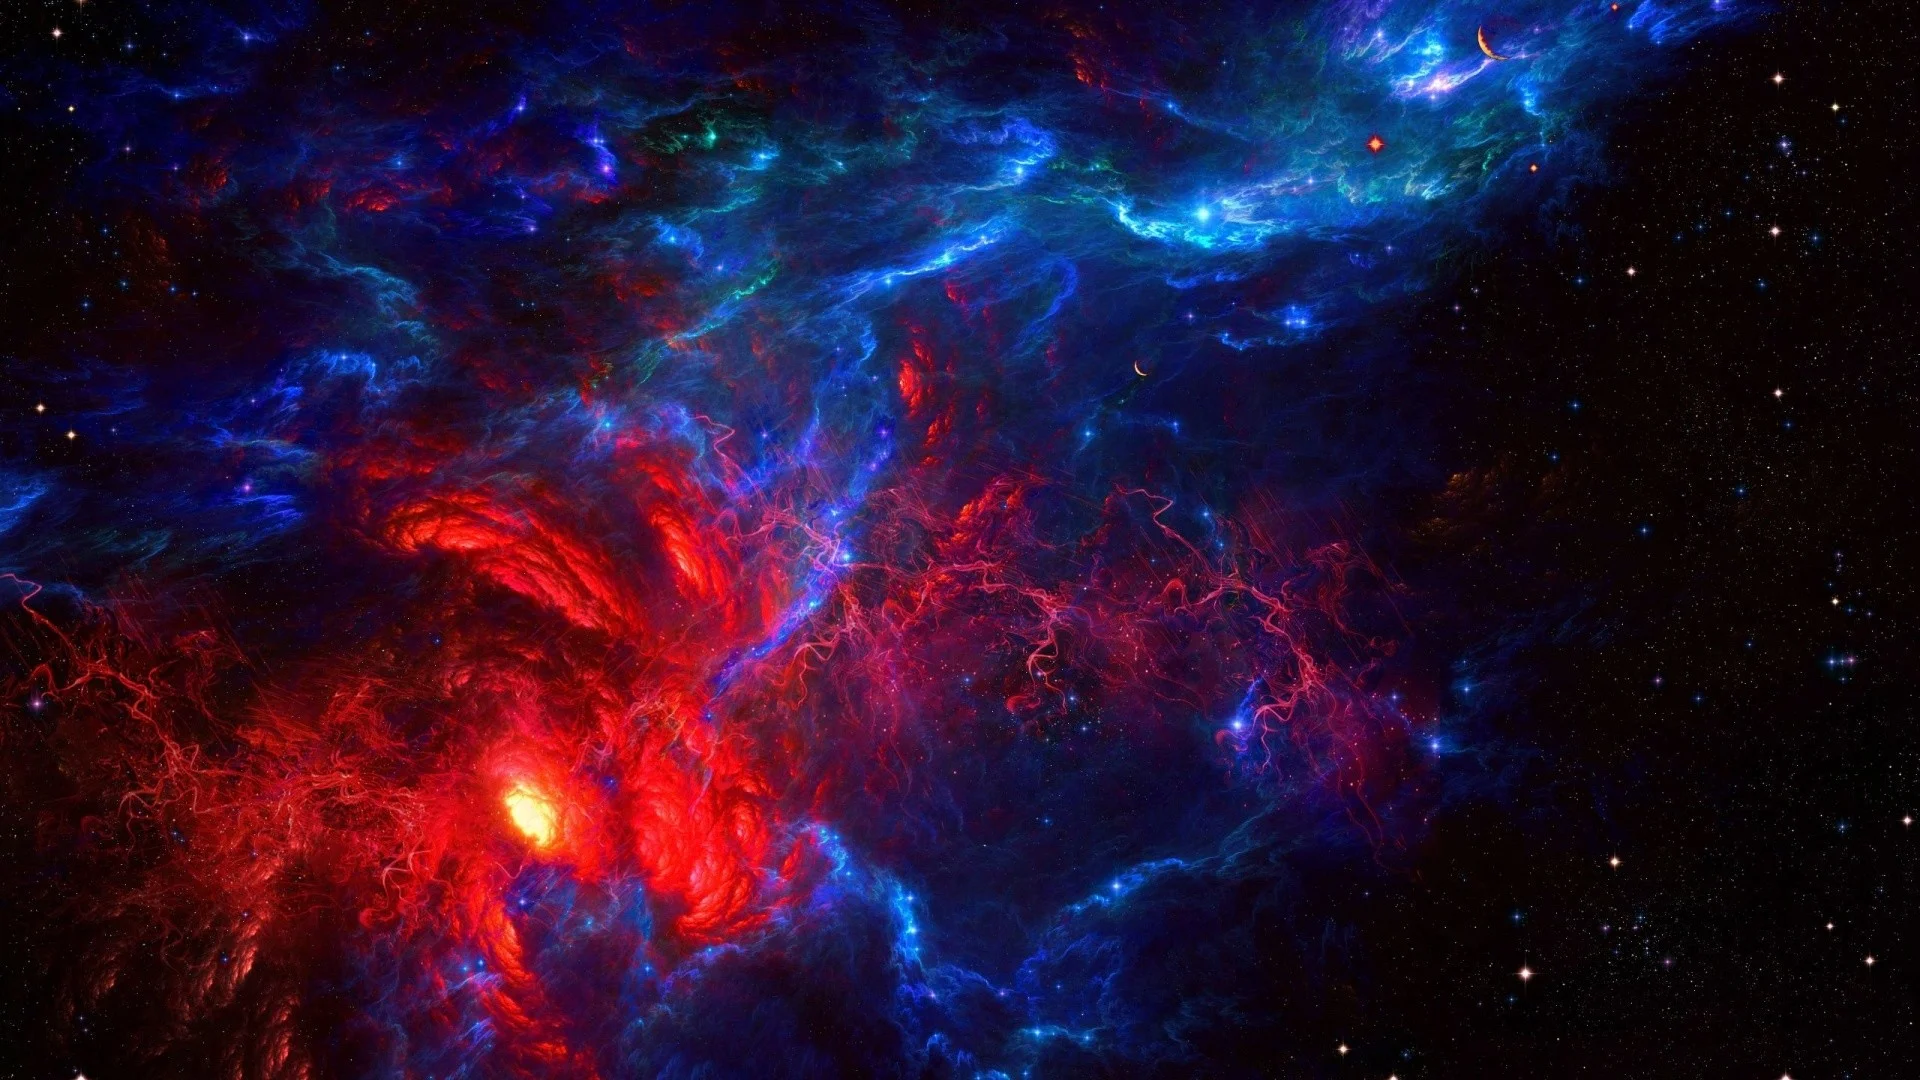 Hình nền Galaxy 4k sẽ mang đến cho bạn cảm giác như đang đi trong không gian vô tận. Với những màu sắc tuyệt đẹp và chi tiết ấn tượng, bạn sẽ nhận ra vẻ đẹp của vũ trụ là vô tận.